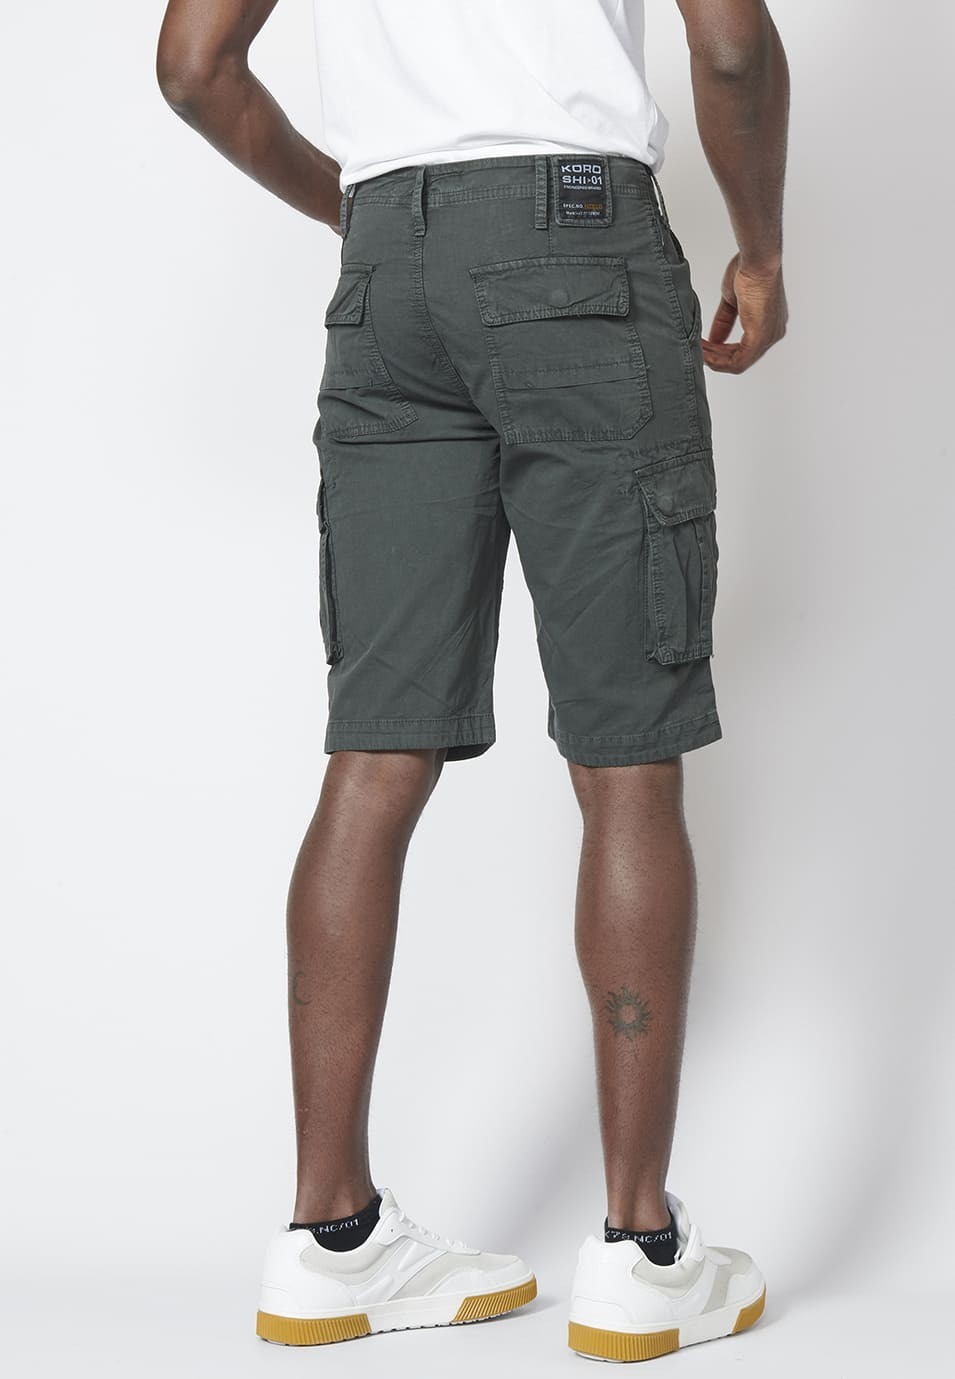 Bermuda pantalón corto estilo cargo para hombre con seis bolsillos color Negro 6